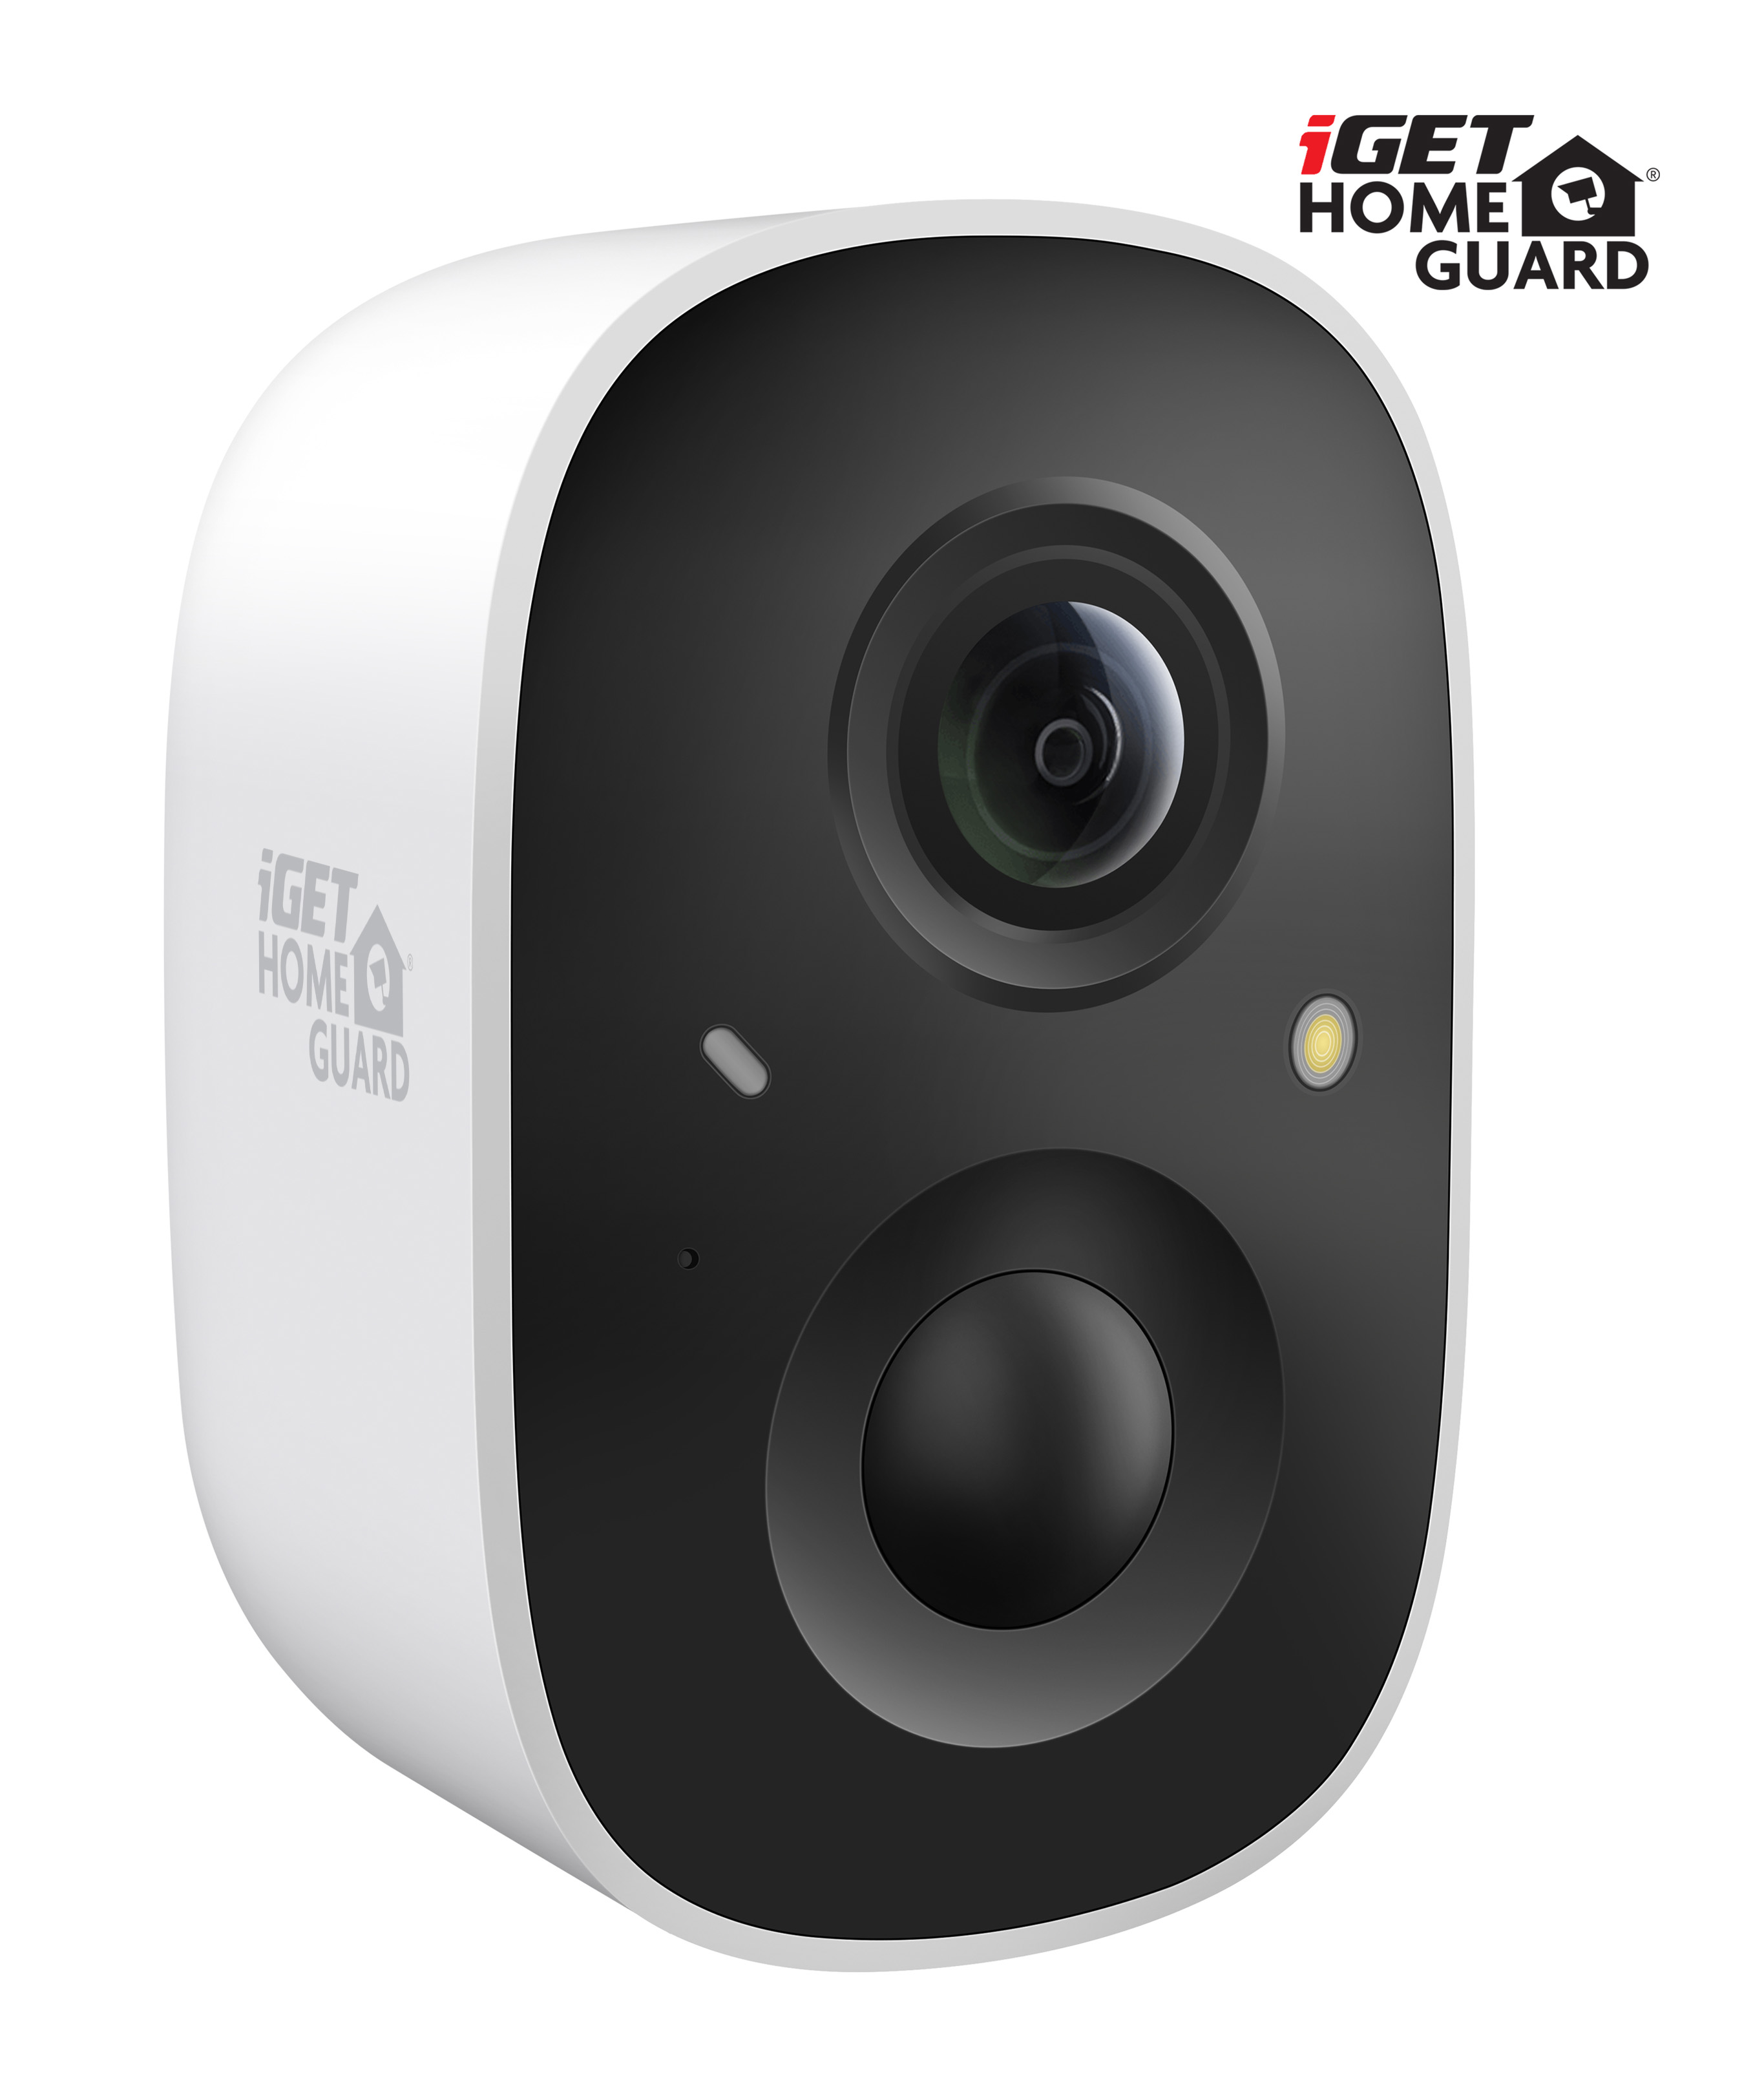 iGET HOMEGUARD HGWBC351 - WiFi IP FullHD 1080p bateriová kamera, noční vidění, dvoucestné audio, IP65 